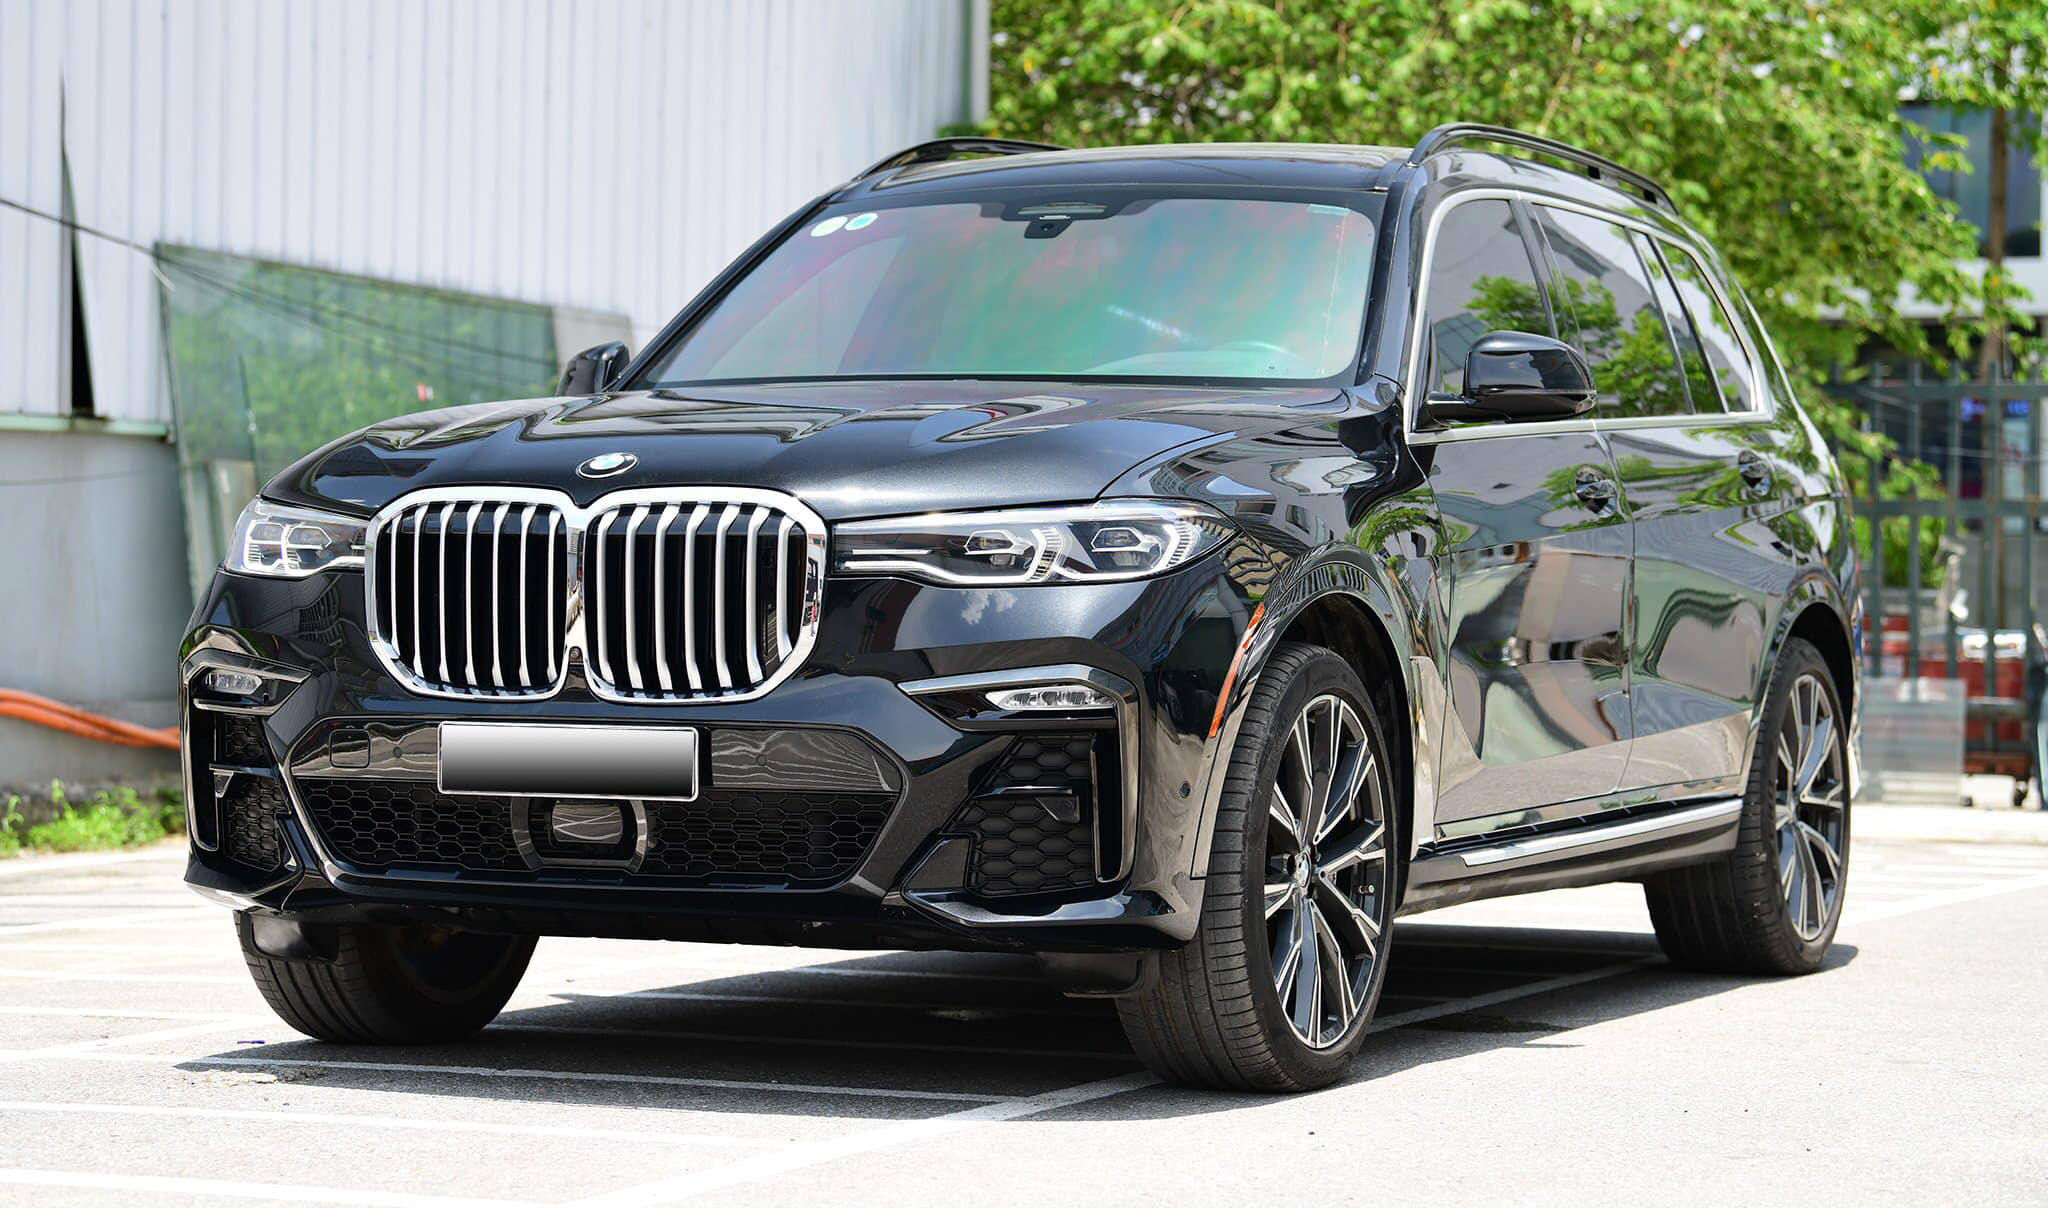 BMW X7 M-Sport nhập Mỹ chạy lướt chào bán lại hơn 6 tỷ đồng